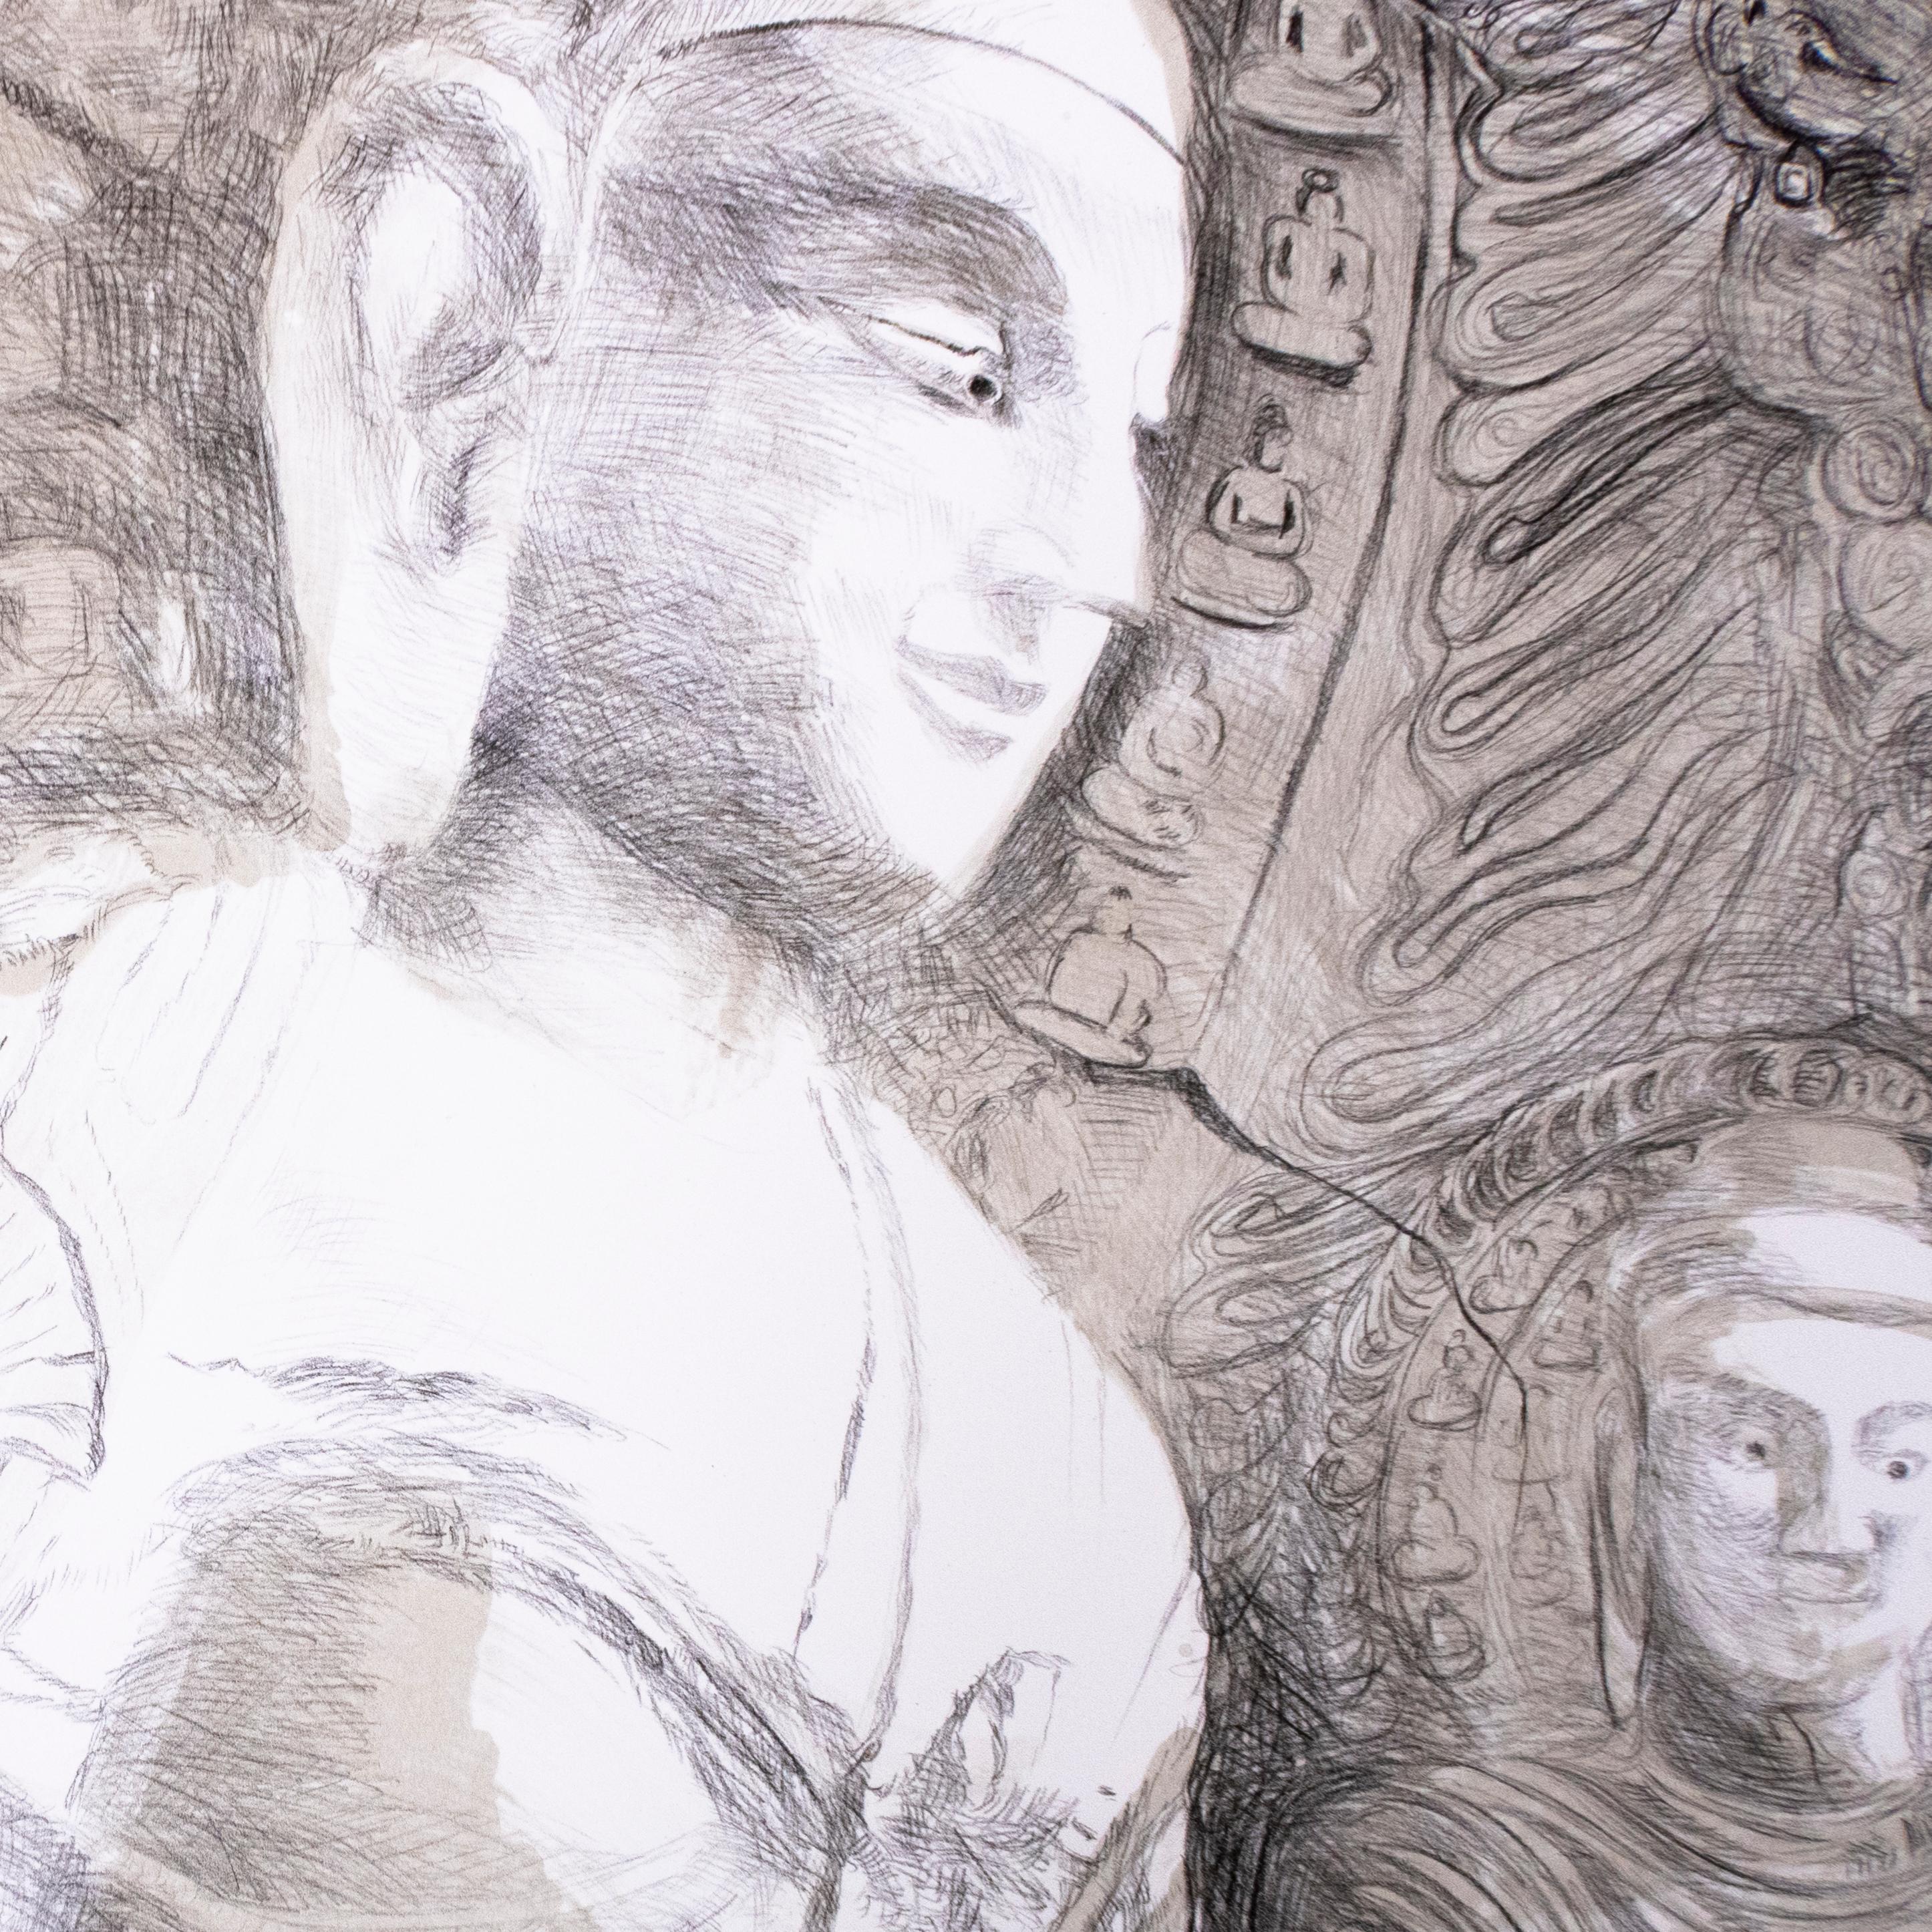 Diese großformatige, minimalistische, schwarz-weiße Zen-Klippenlandschaft zeigt Buddhas mit Mudra-Händen in Indien. Gottheiten im Lotussitz mit in Stein und Fels gehauenen Blumen- und Pflanzenmustern und -designs bilden den Hintergrund. 

Eine